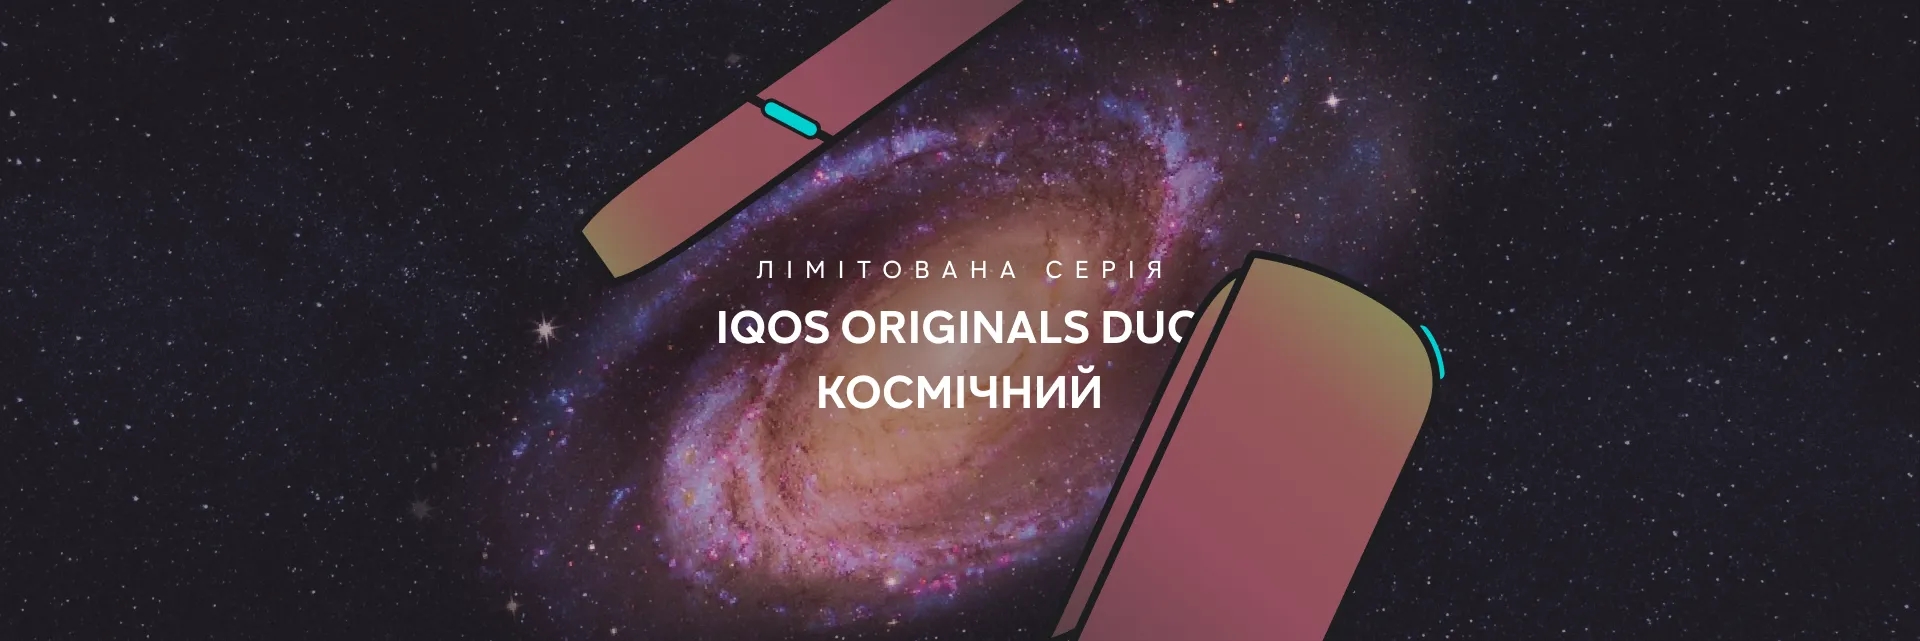 new-iqos-original-duo-cosmic